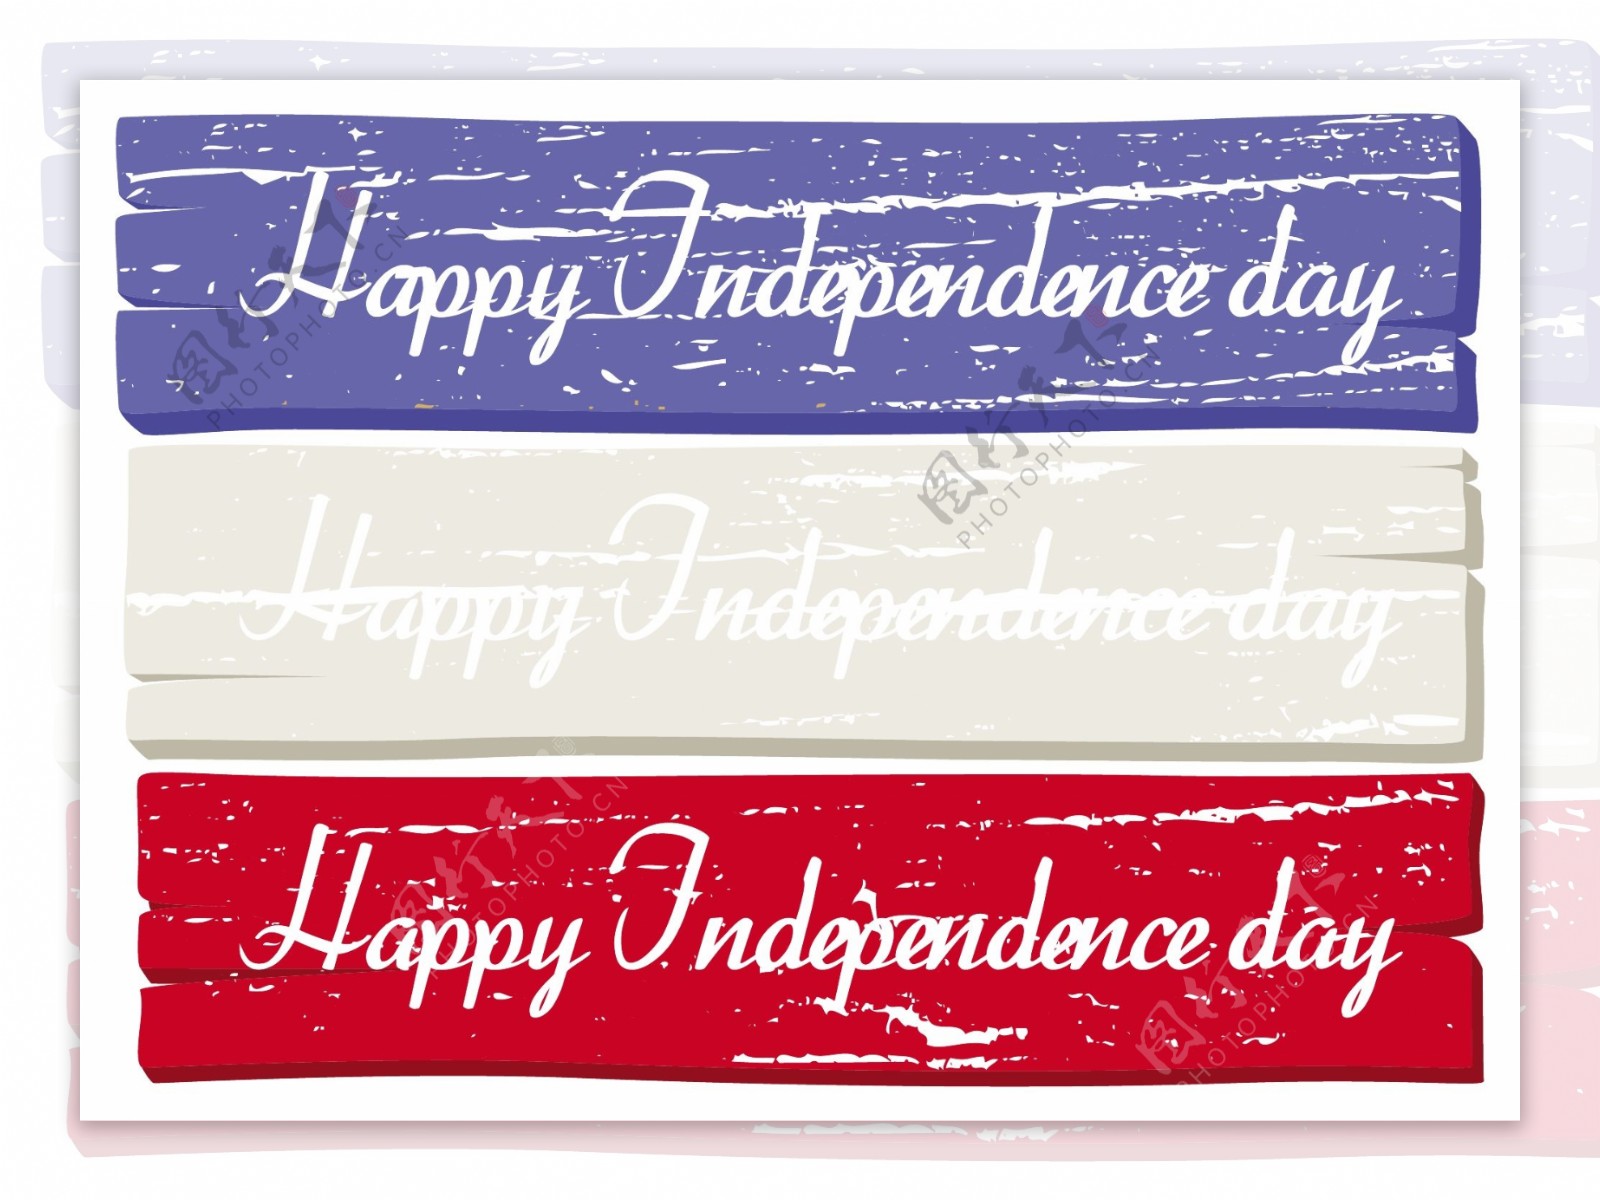 木板的旗帜美国独立日向量的主题设计